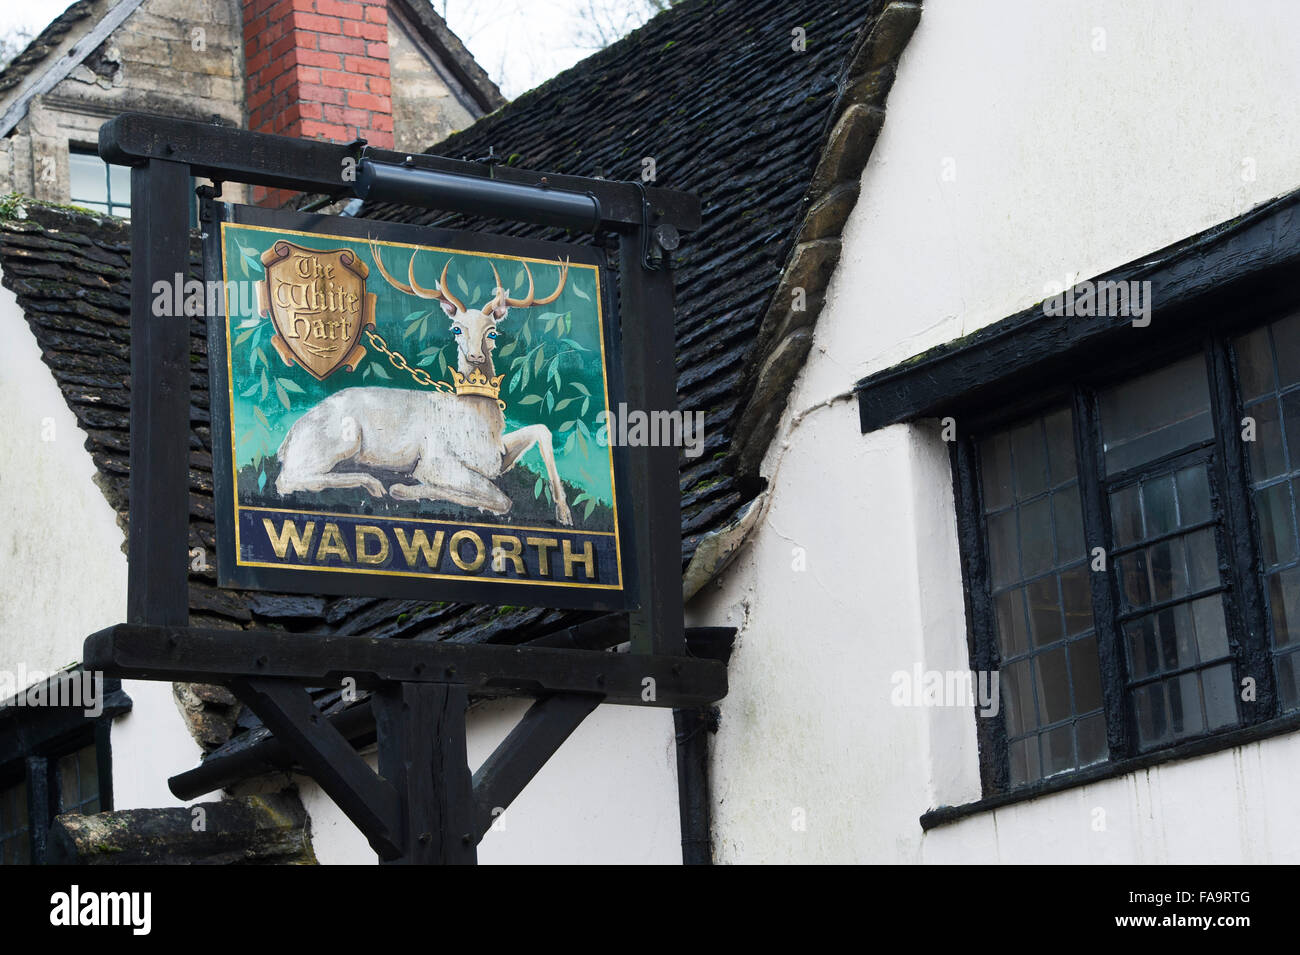 Le White Hart enseigne de pub. Castle Combe, Wiltshire, Angleterre Banque D'Images